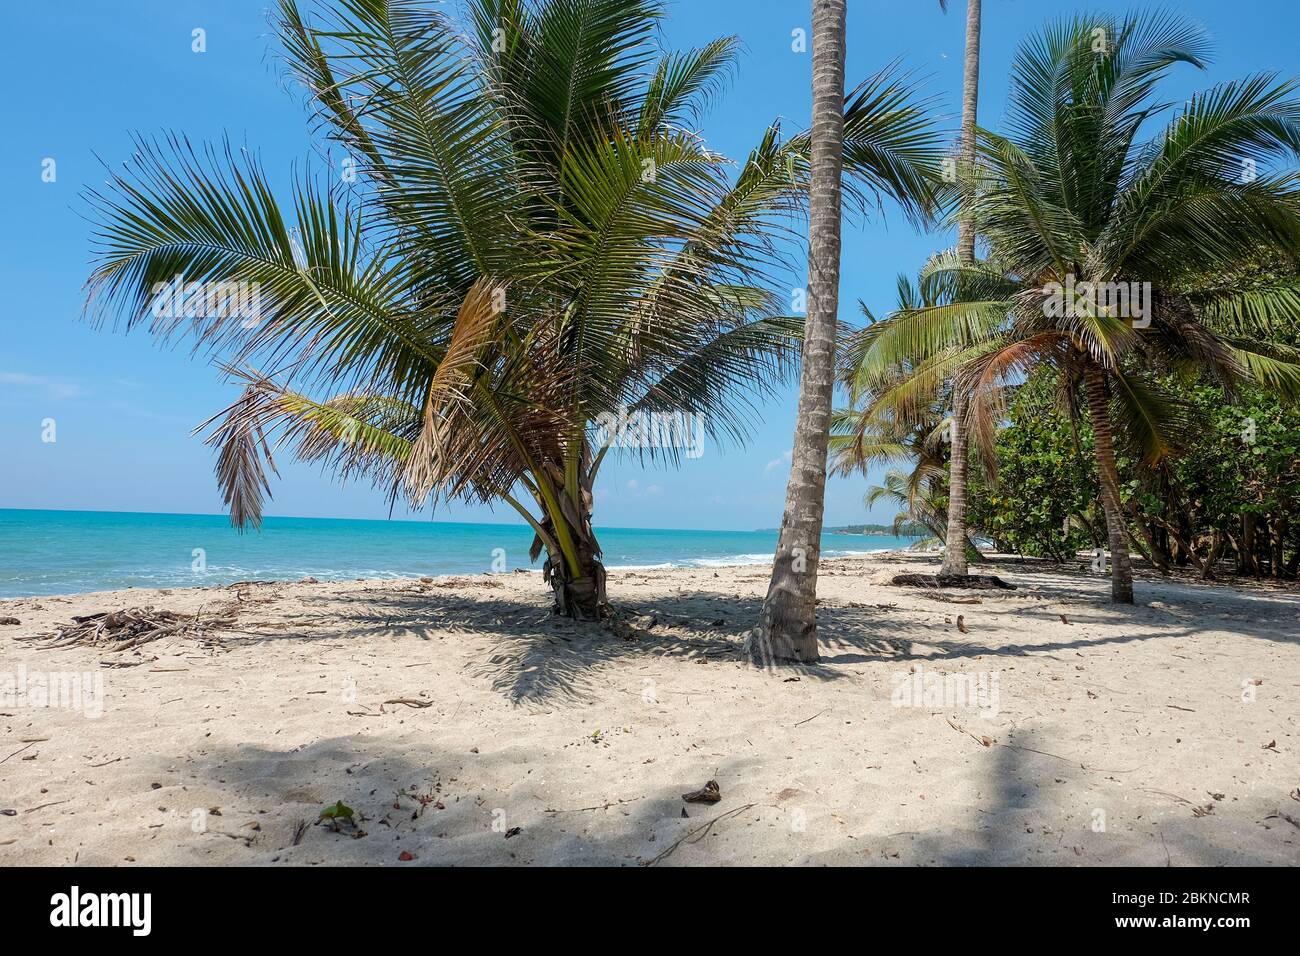 Vista sul cielo delle palme in una giornata di sole al mare Foto Stock